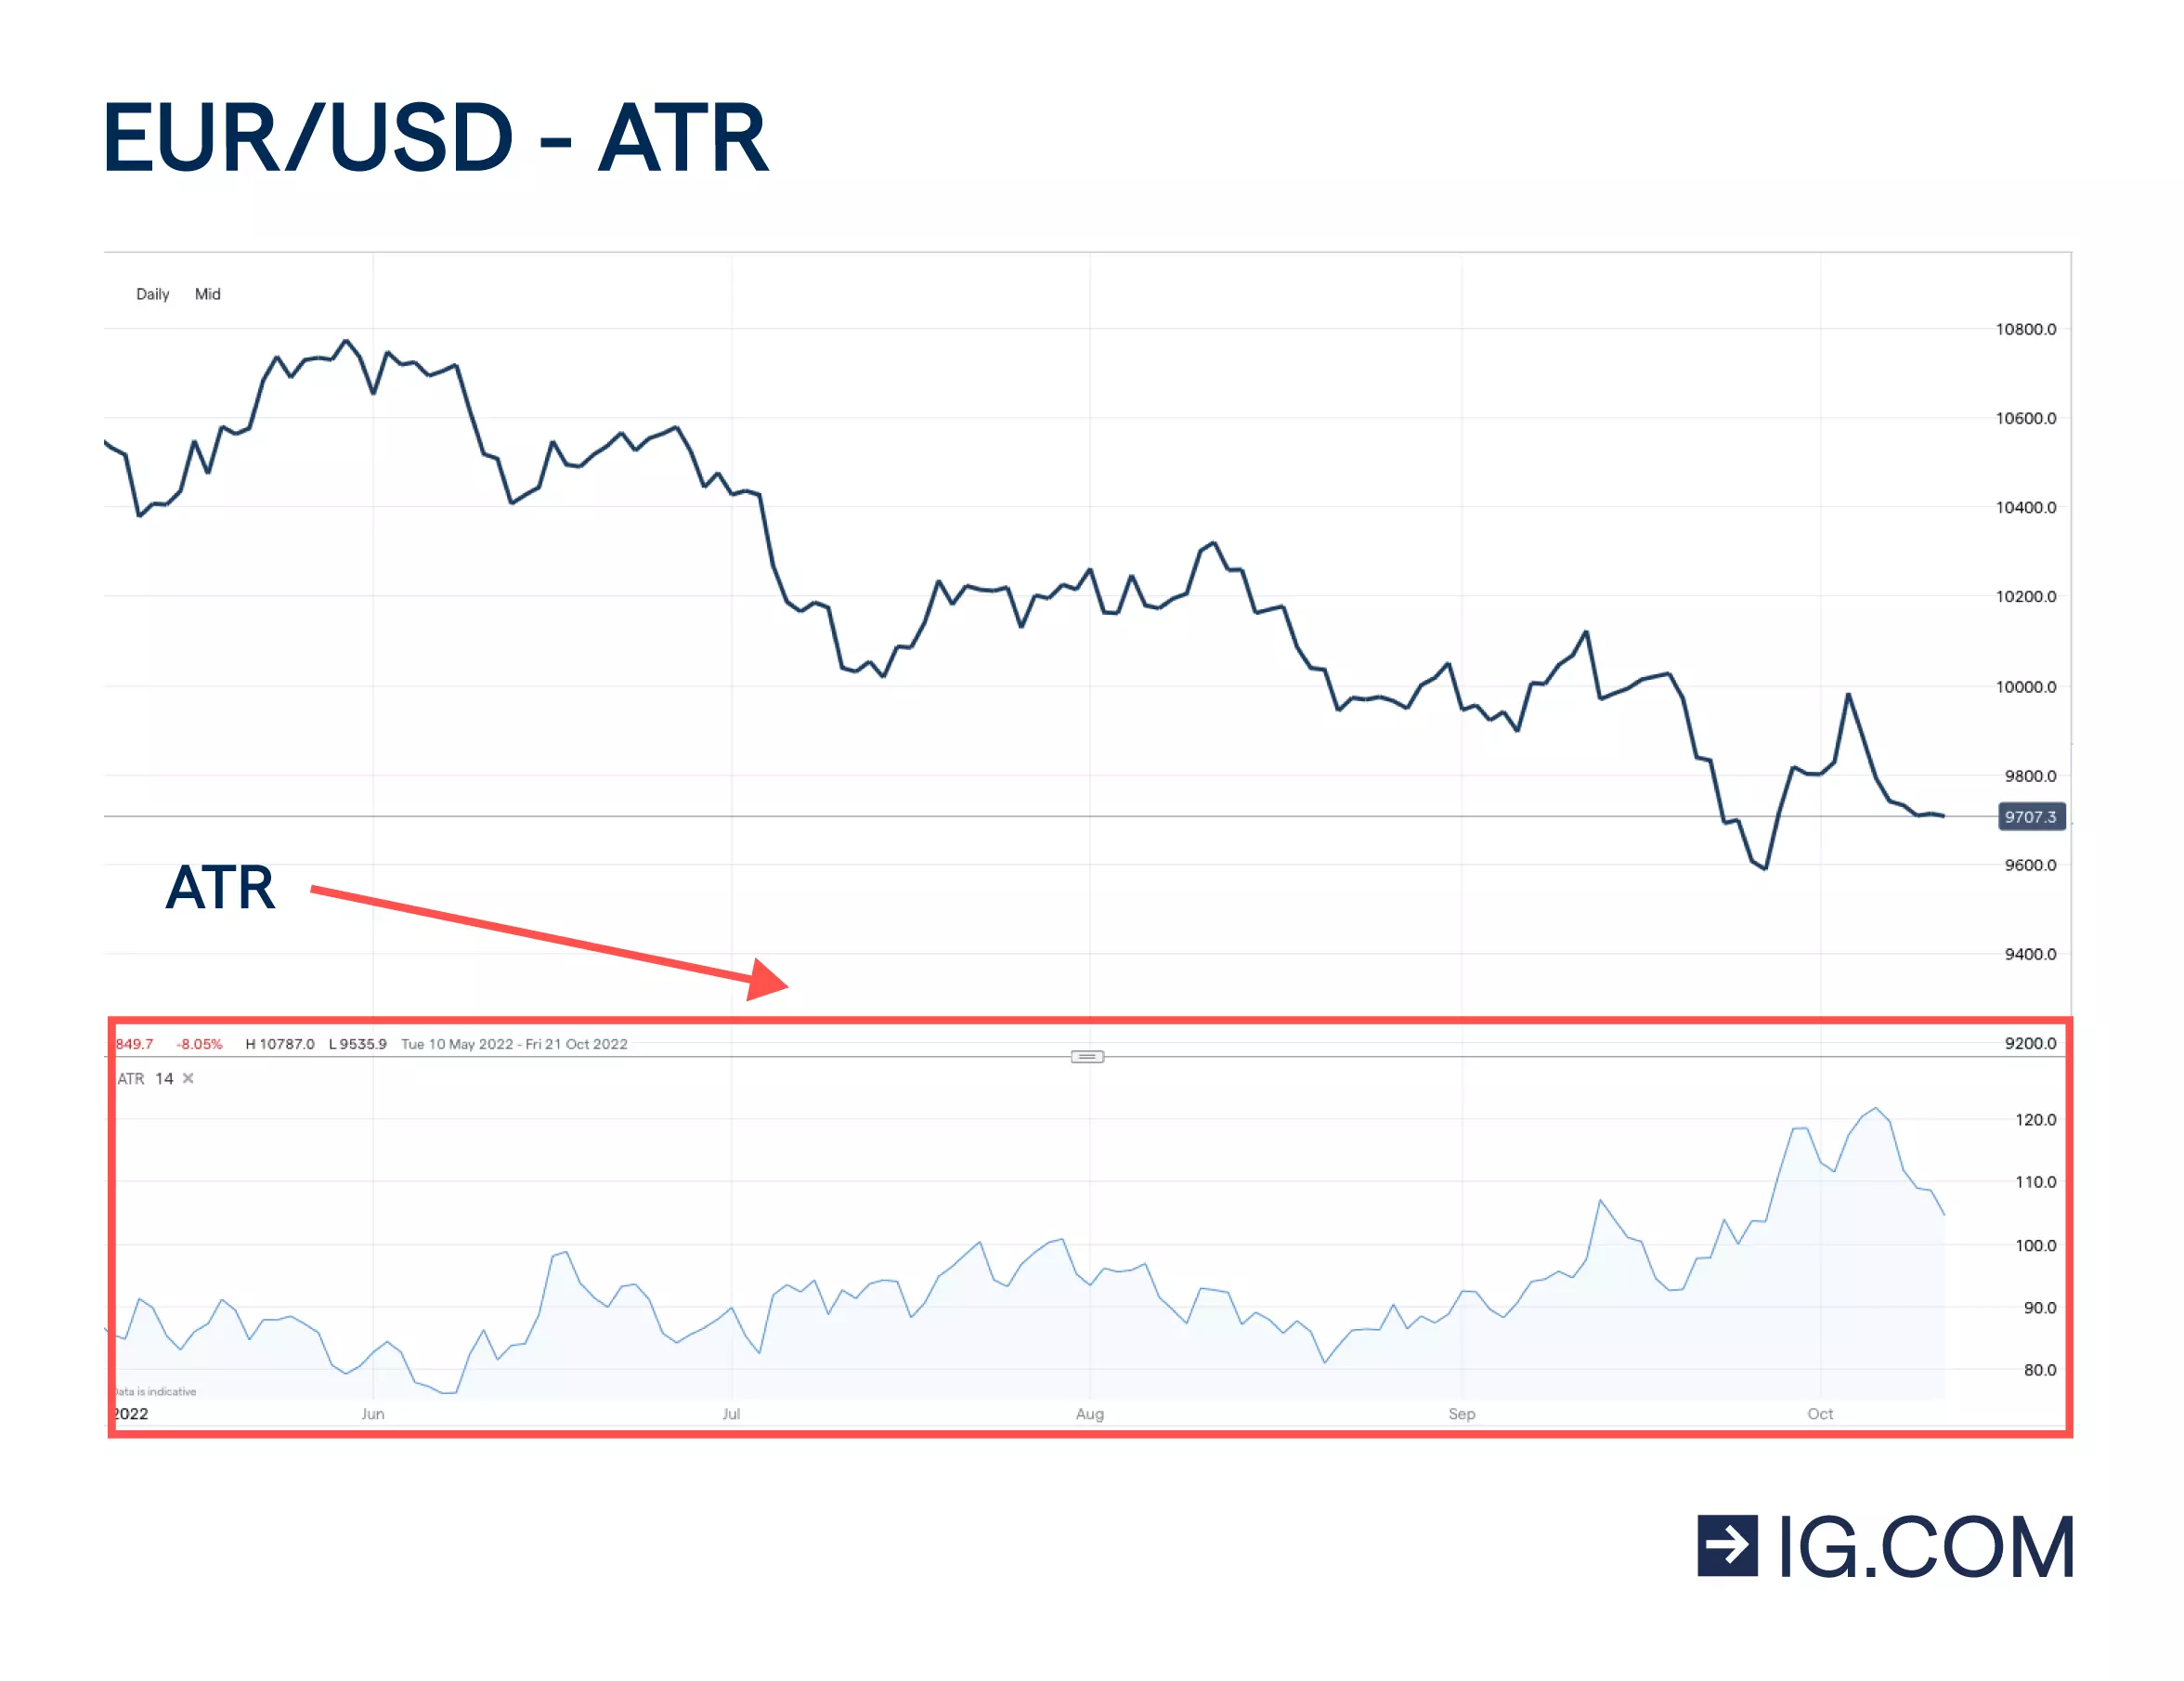 EUR/USD-Kerzendiagramm, bei dem der ATR-Indikator (Average True Range) unter dem Diagramm dargestellt ist, der die Bewegungen des Hauptdiagramms (ATR) nachgebildet wird.